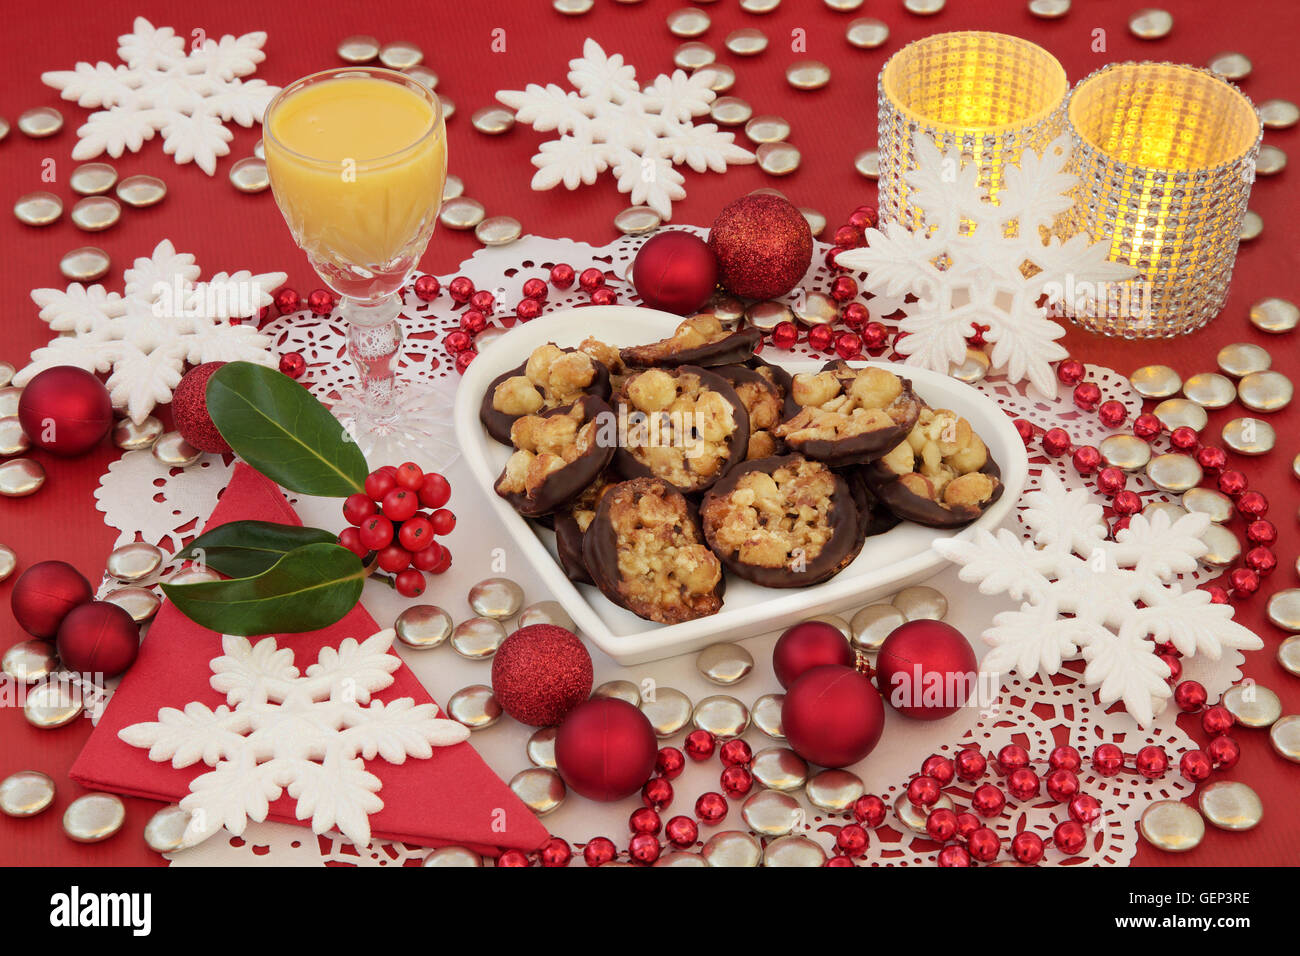 Scena di natale di biscotti Fiorentino su un cuore piastra sagomata, zabaione, agrifoglio, candele e ninnolo decorazioni con i fiocchi di neve. Foto Stock